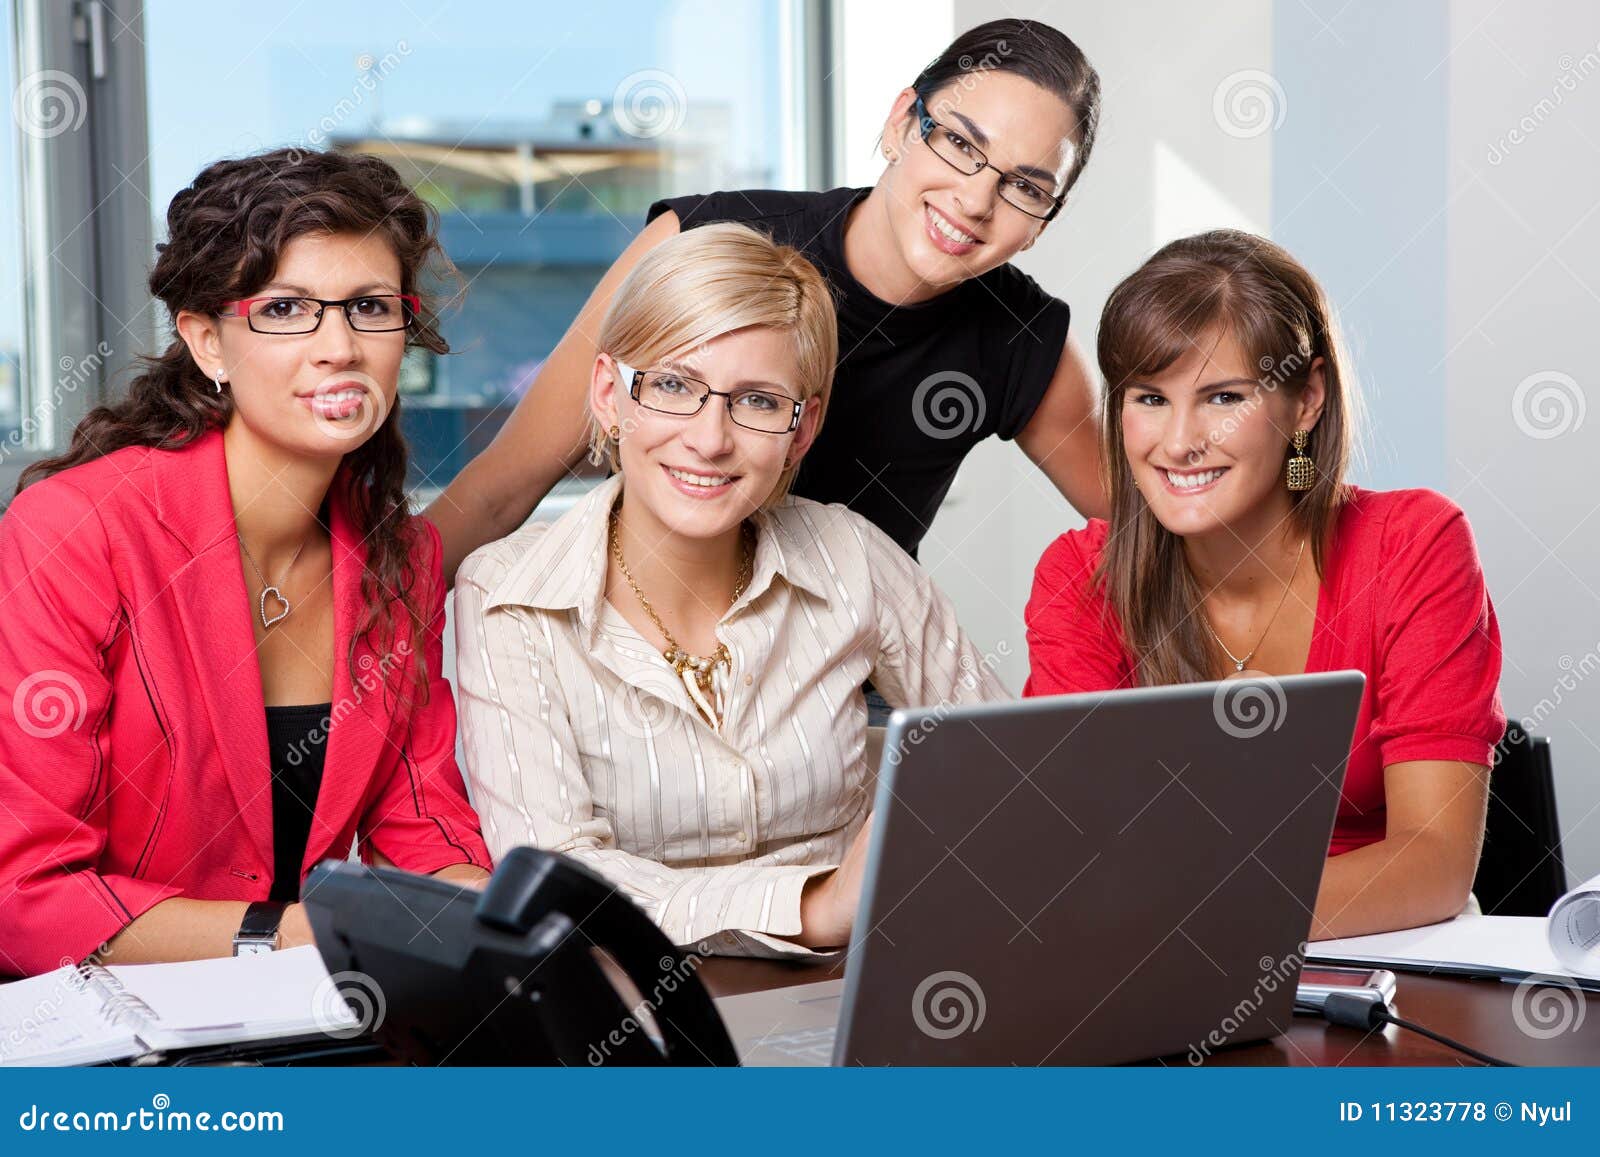 team of businesswomen